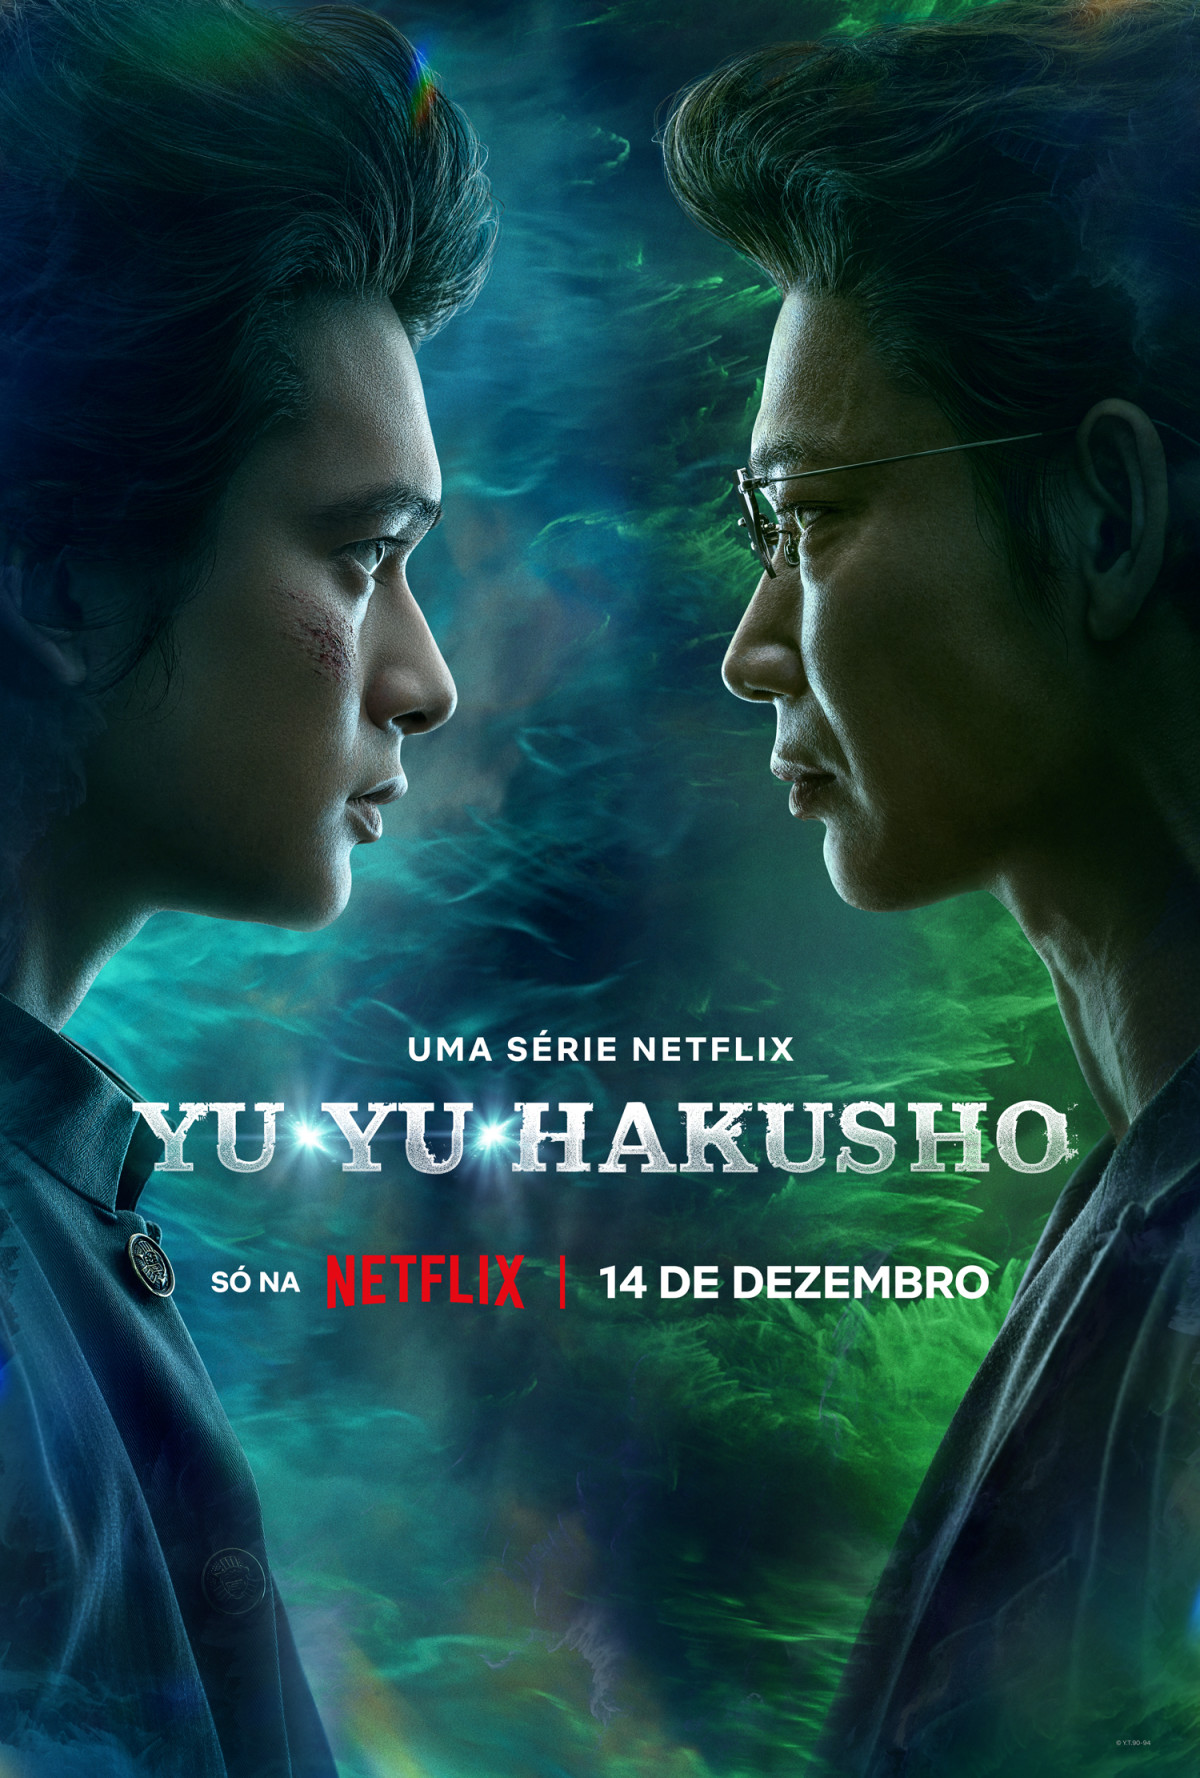 Star Hill Brasil  Séries, Jogos, Board Games & Nerdices do dia a dia!:  Netflix divulga data de lançamento do Live Action de Yu Yu Hakusho!